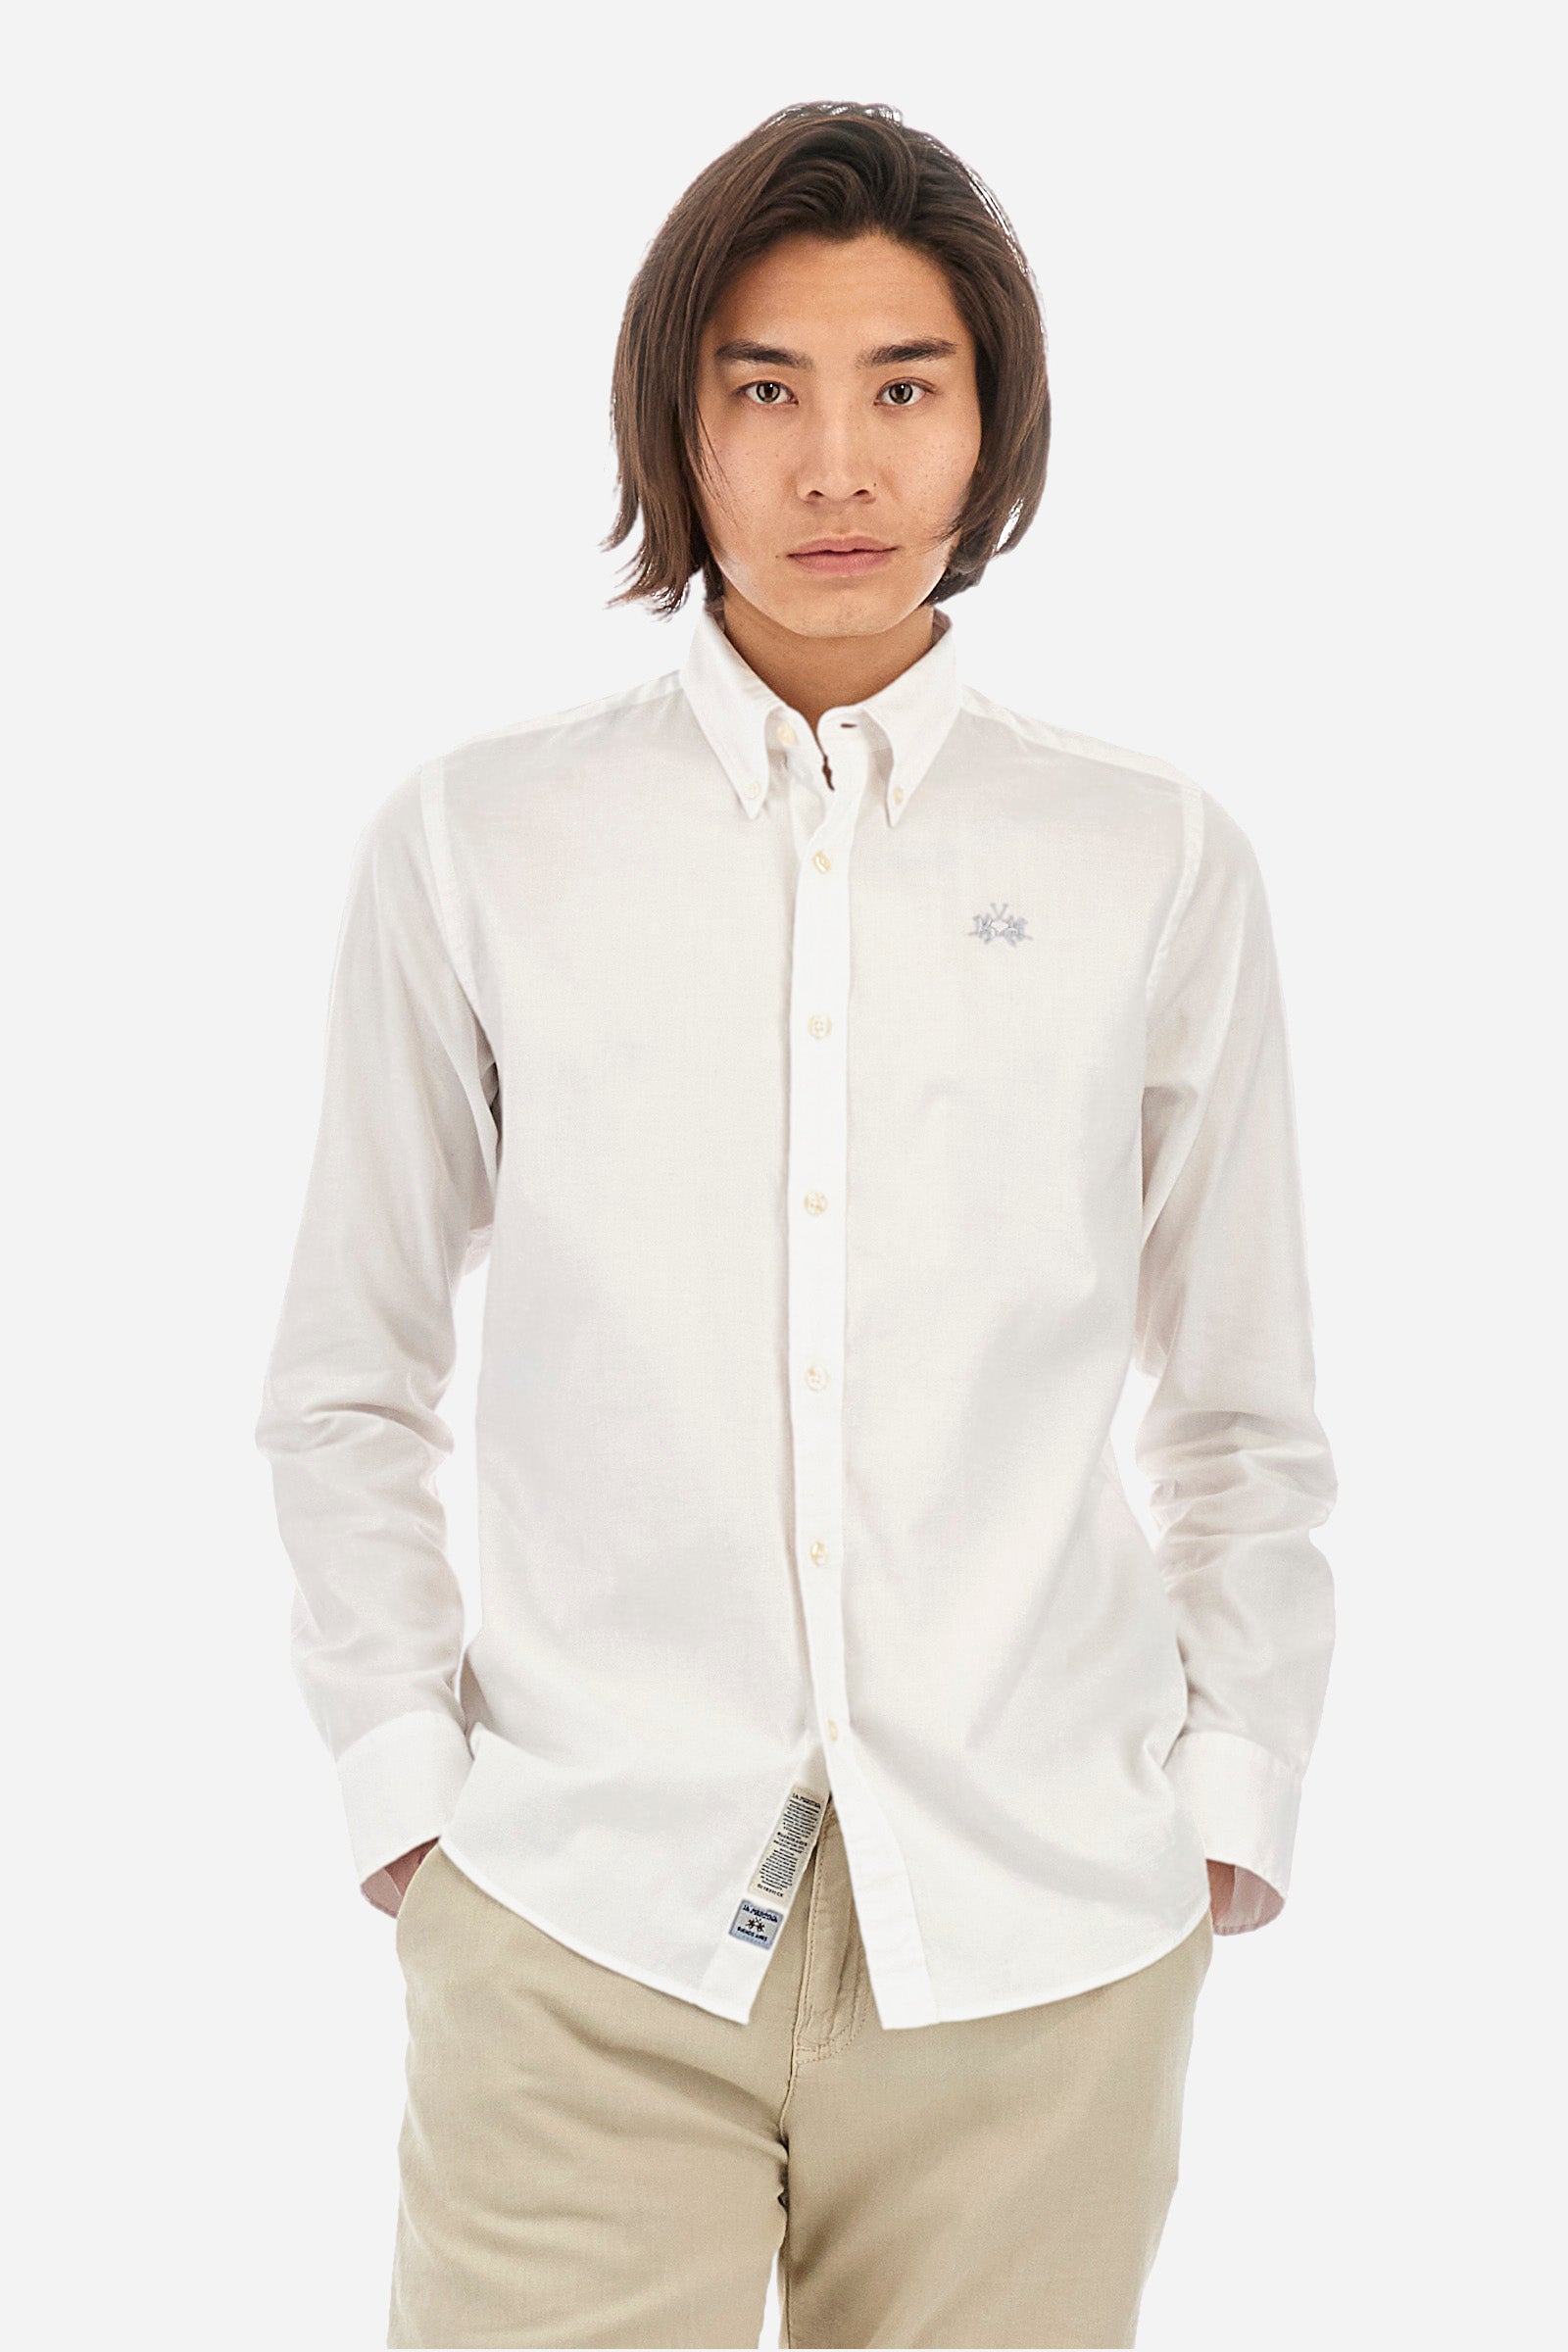 Camisa de hombre en algodón slim fit manga larga